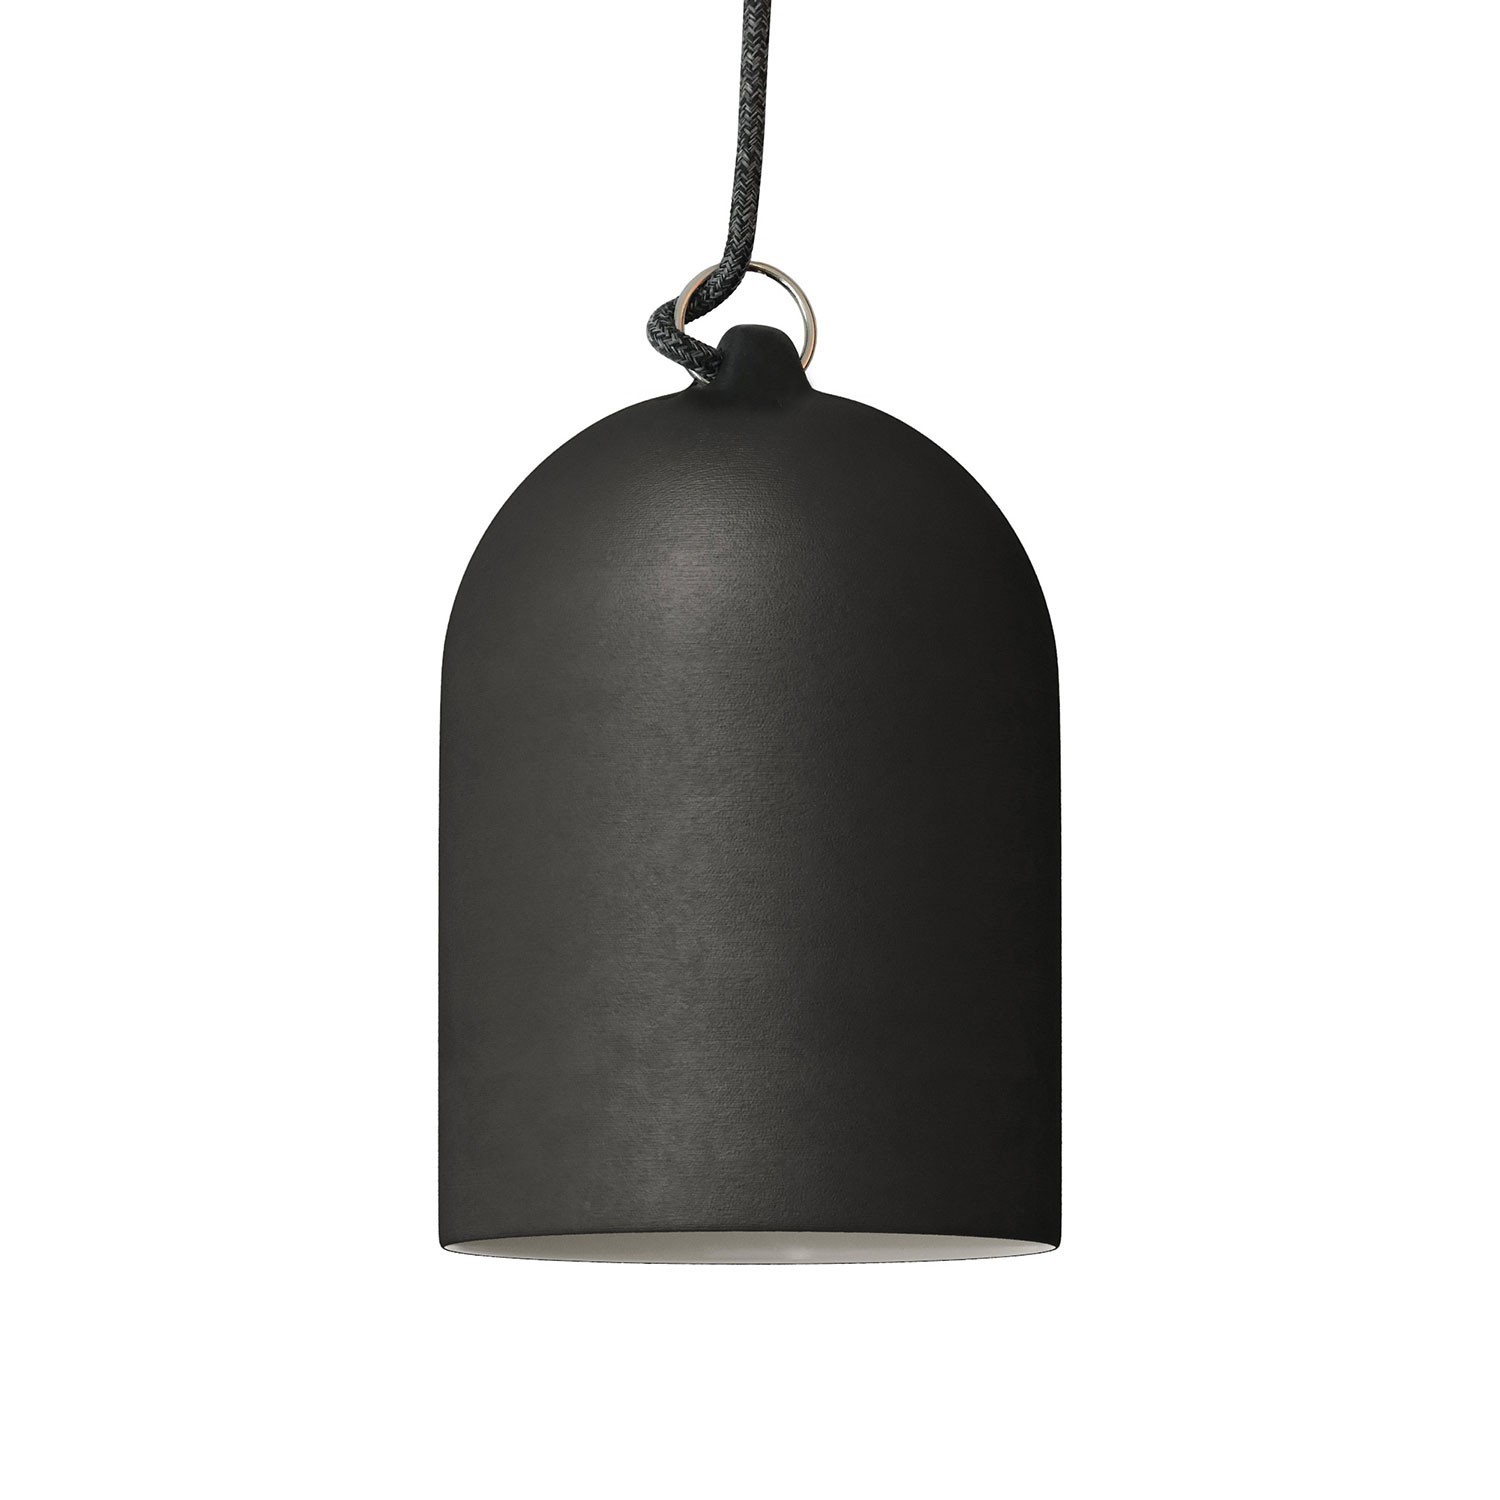 Visilica s tekstilnim kabelom i Mini Bell XS zvonom, keramičkim sjenilom - Proizvedeno u Italiji